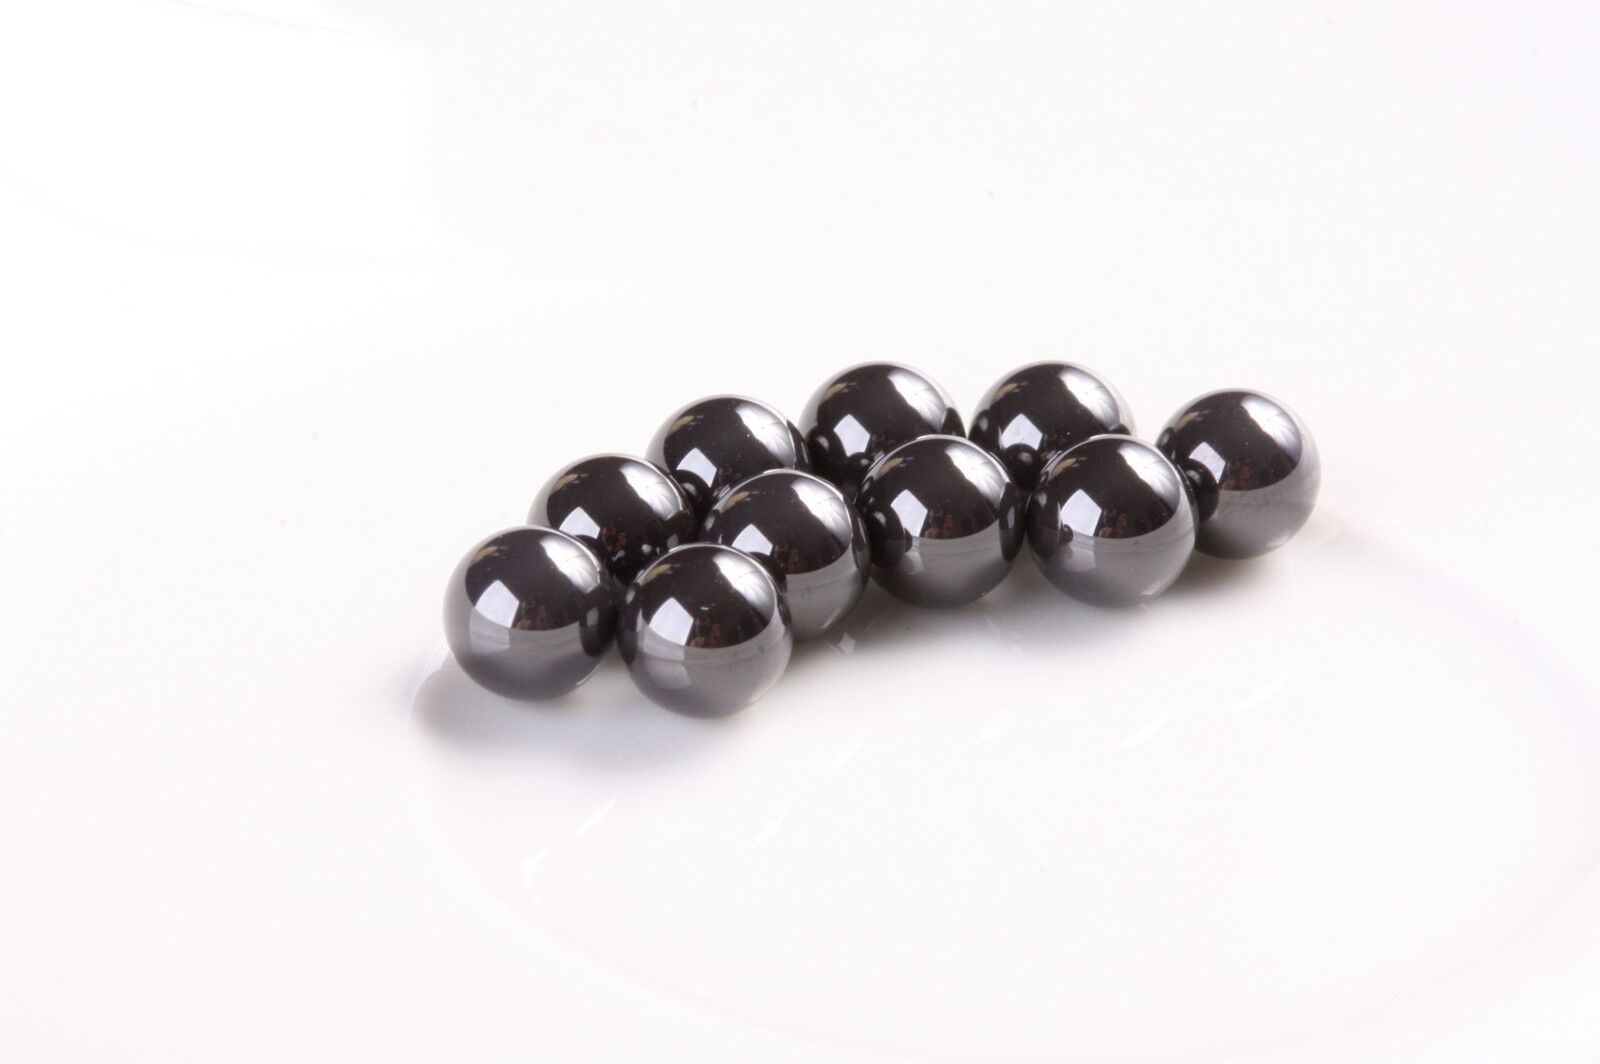 3/16 Silicon Nitride Ceramic Balls 10 piece